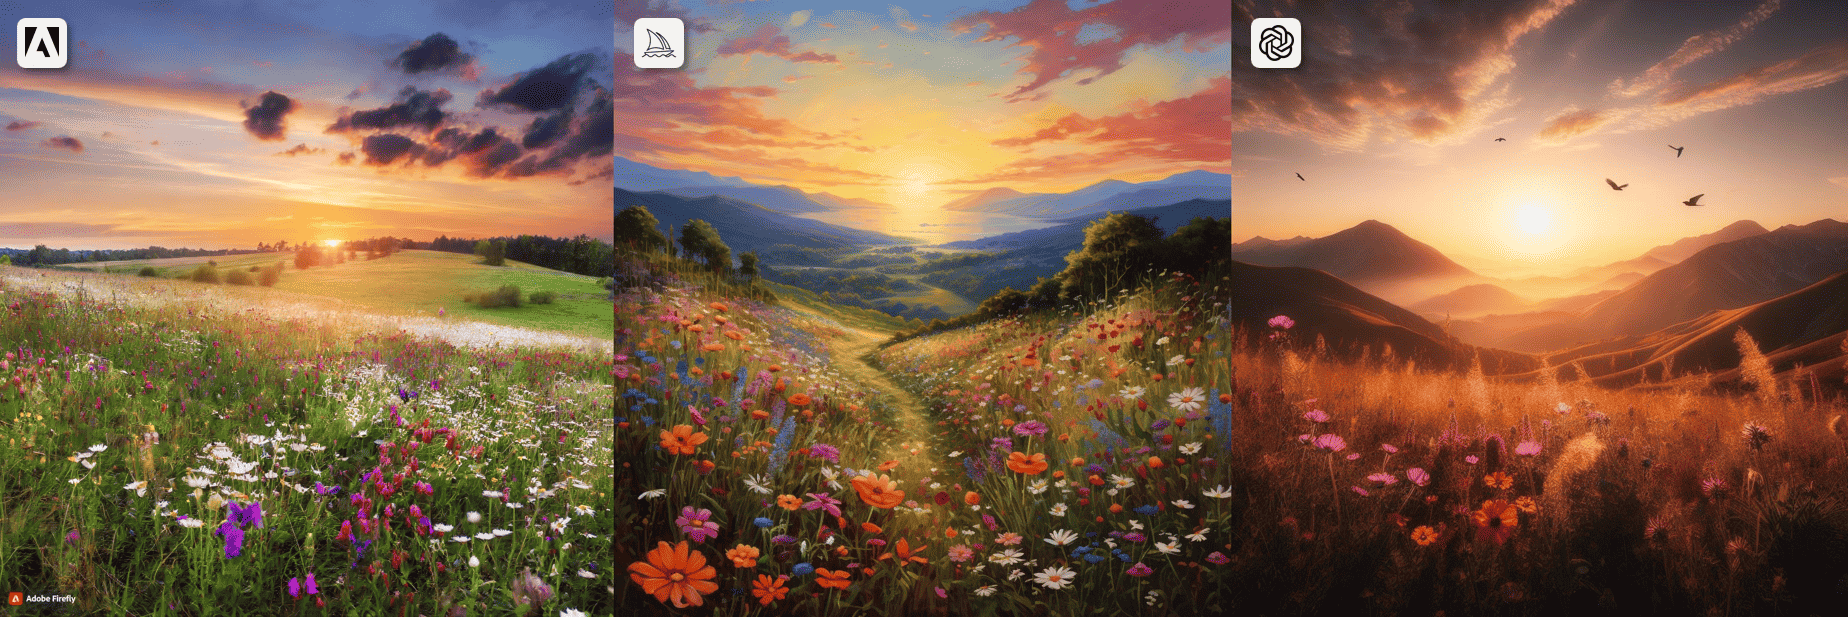 A wildflower meadow sunset landscape